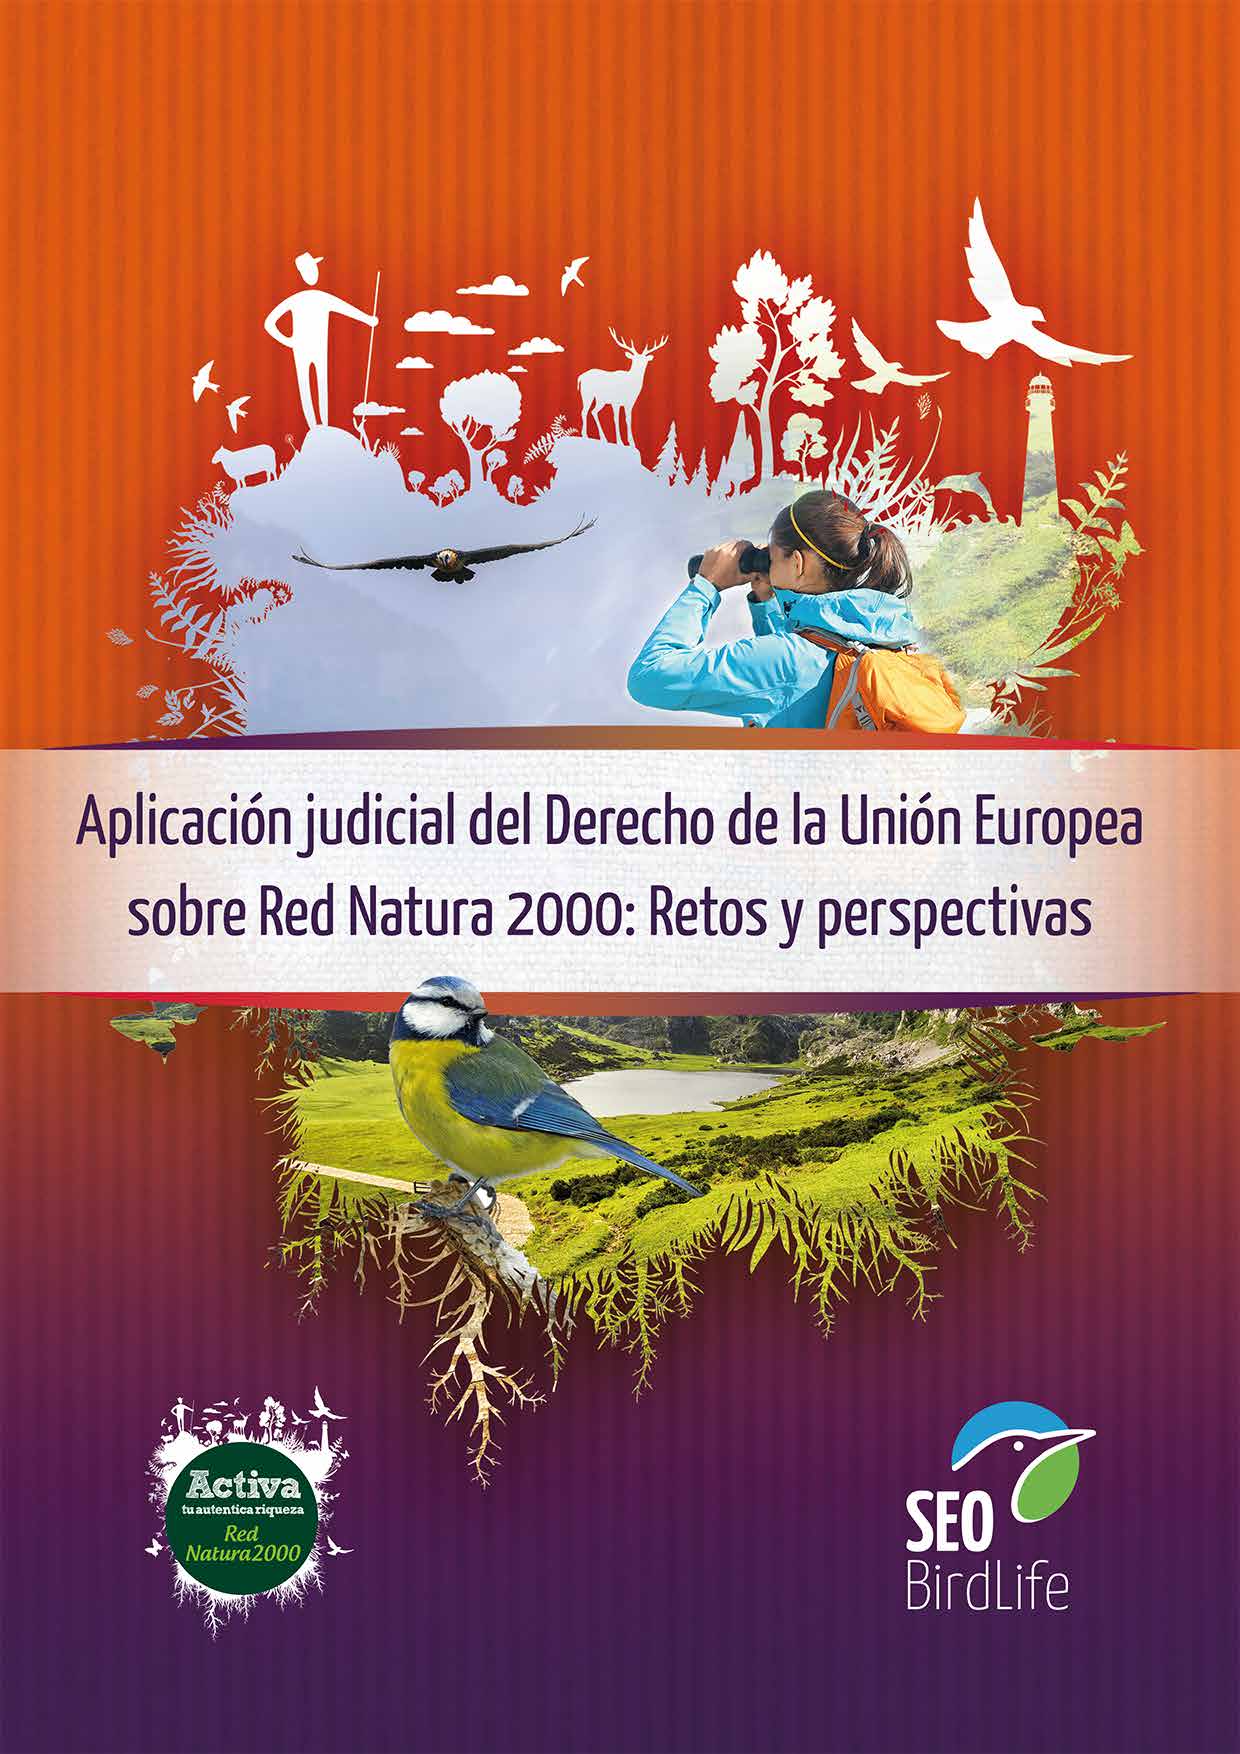 Aplicación judicial del Derecho de la Unión Europea sobre Red Natura 2000:  Retos y perspectivas - Red Natura 2000Red Natura 2000